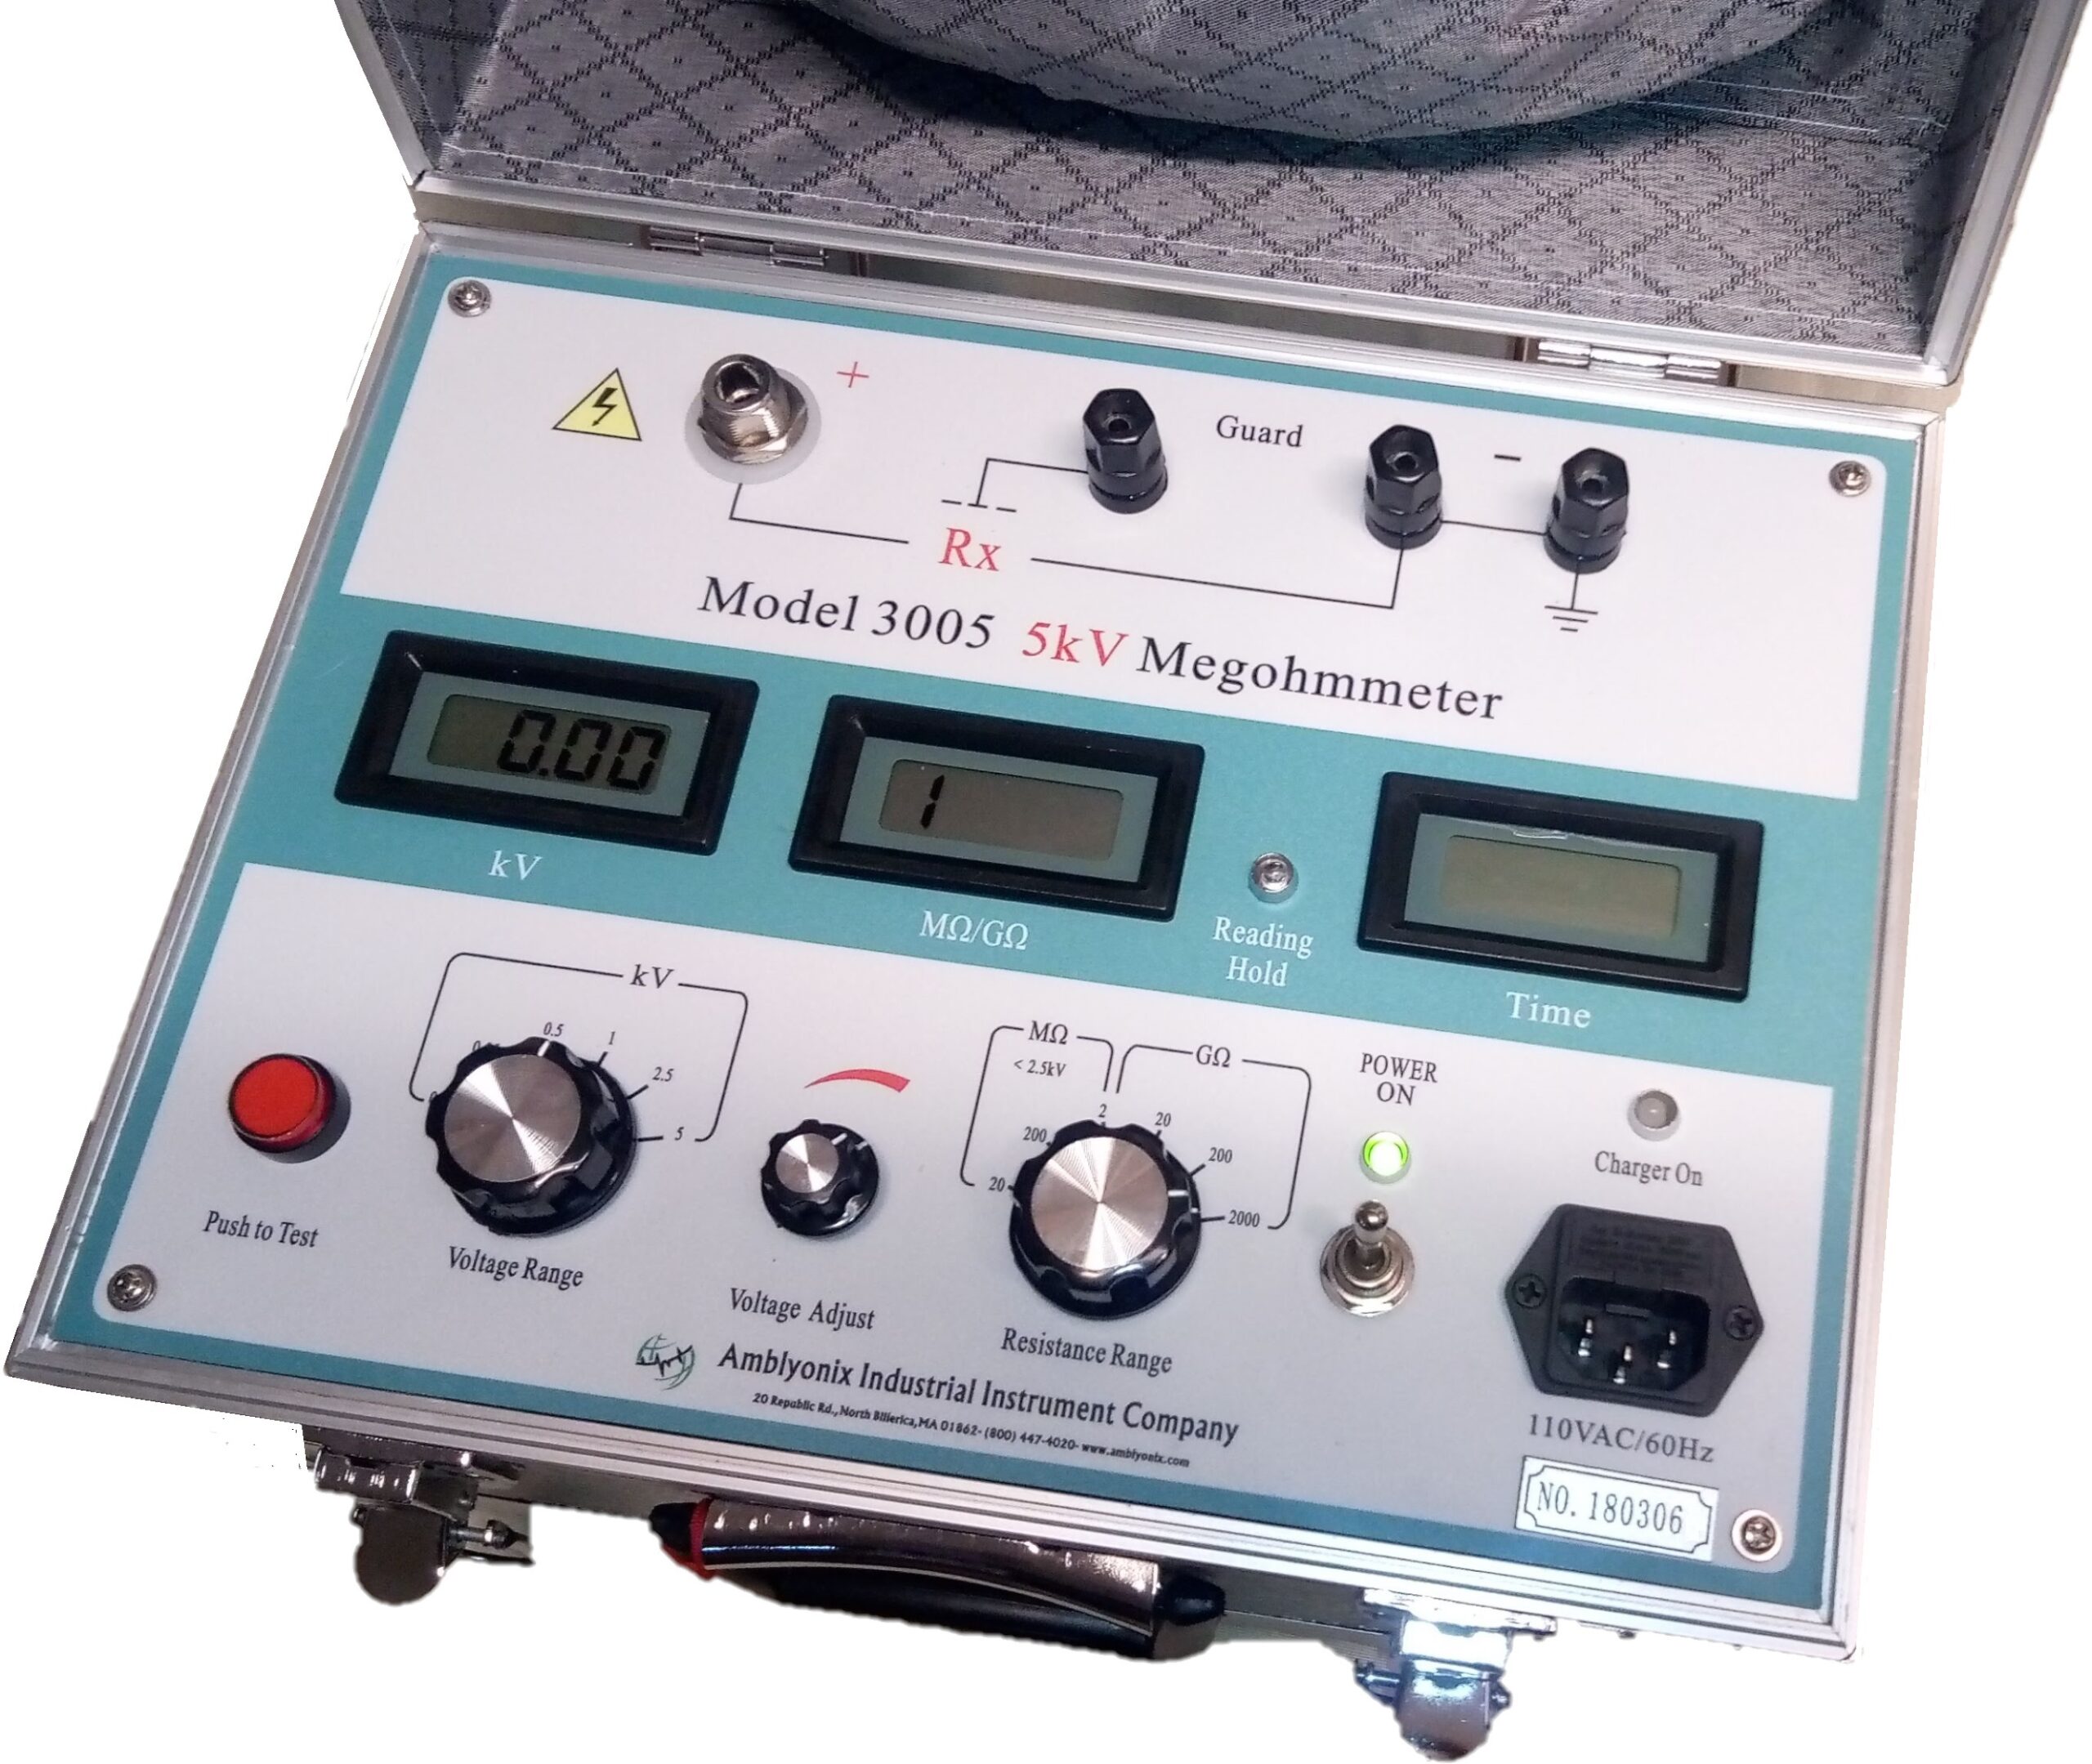 Model 3005 Megohmmeter 5 kV